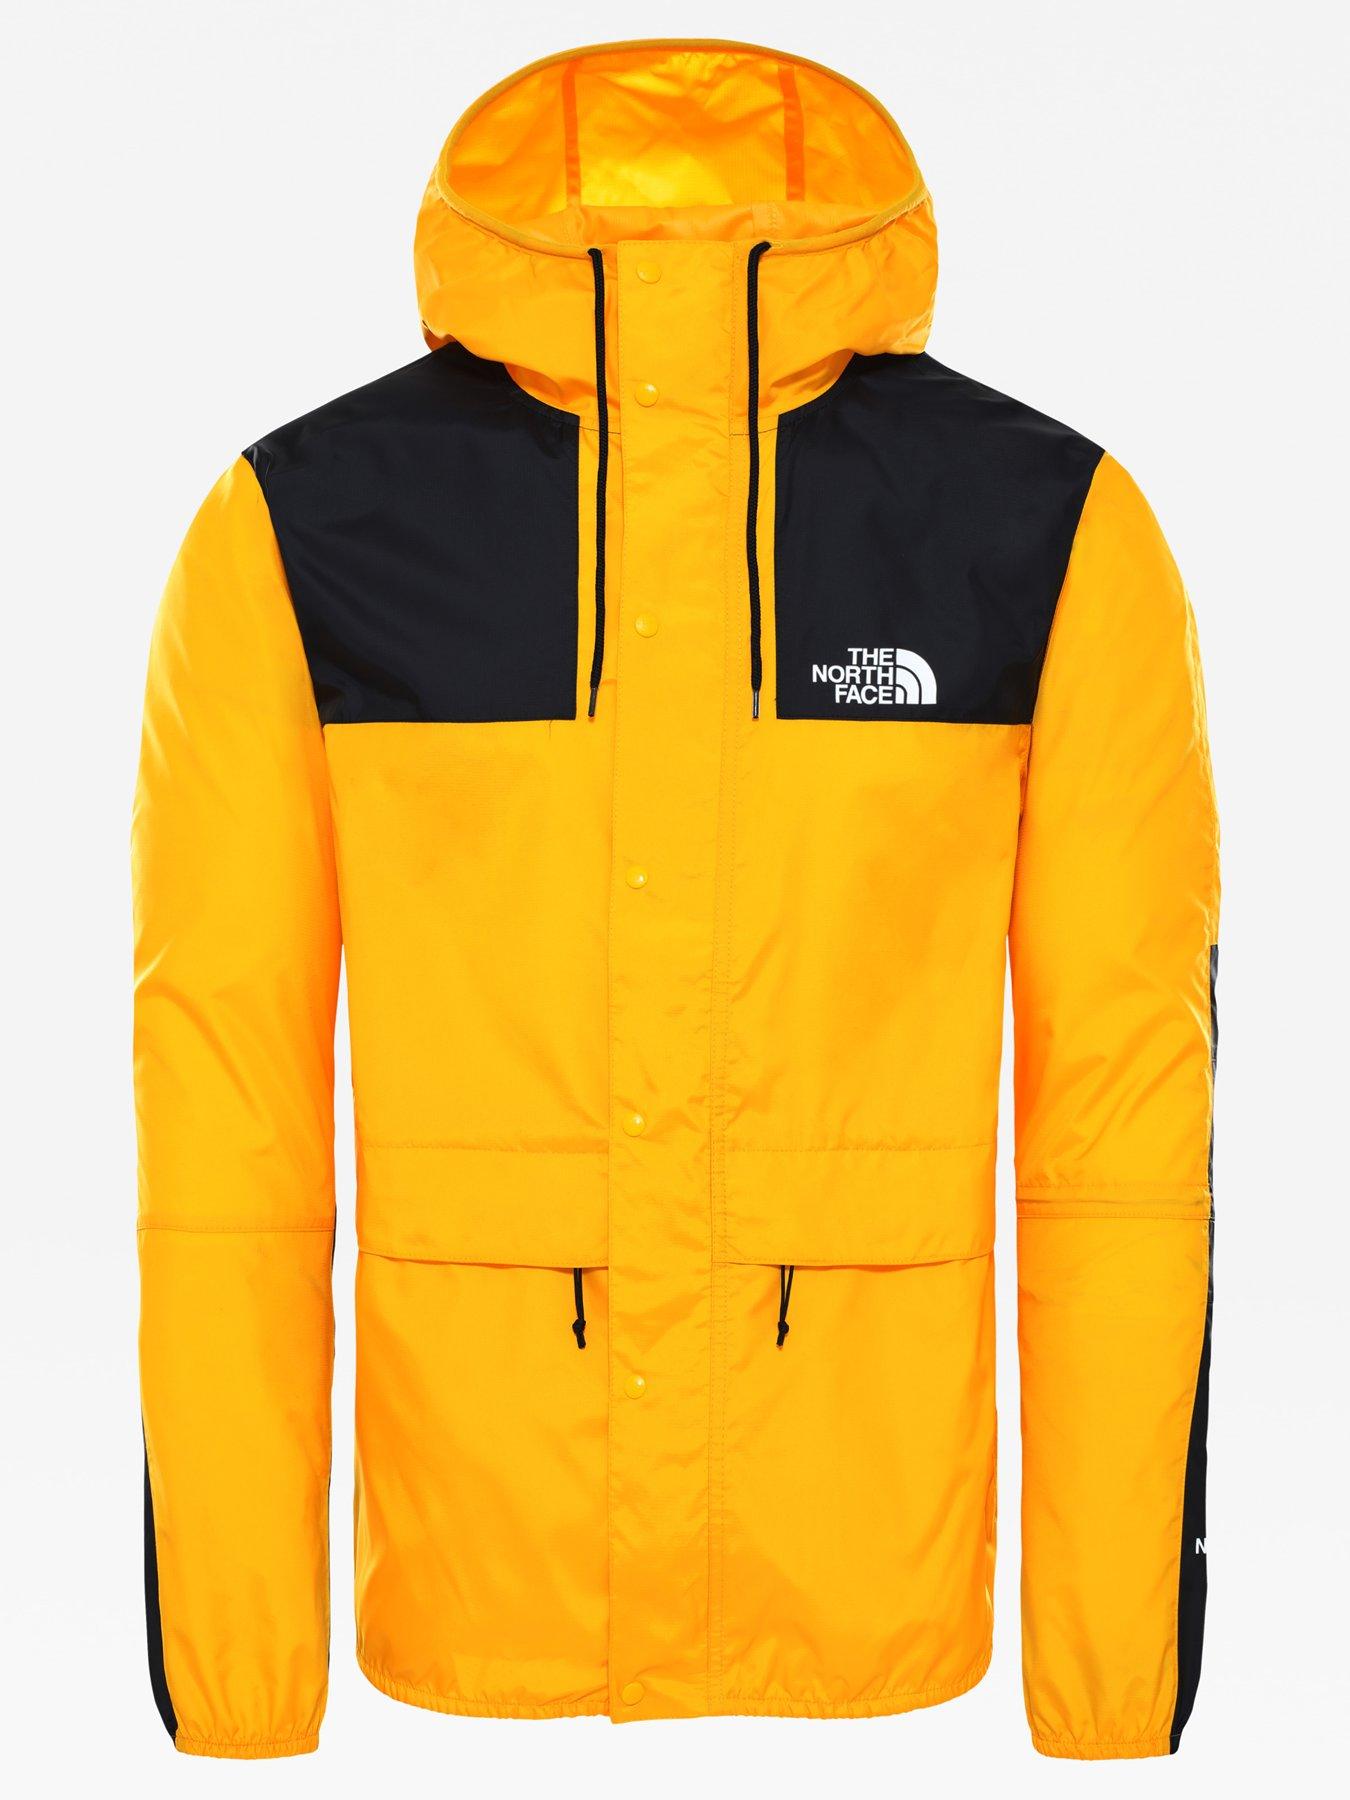 tnf 1985 mountain jacket